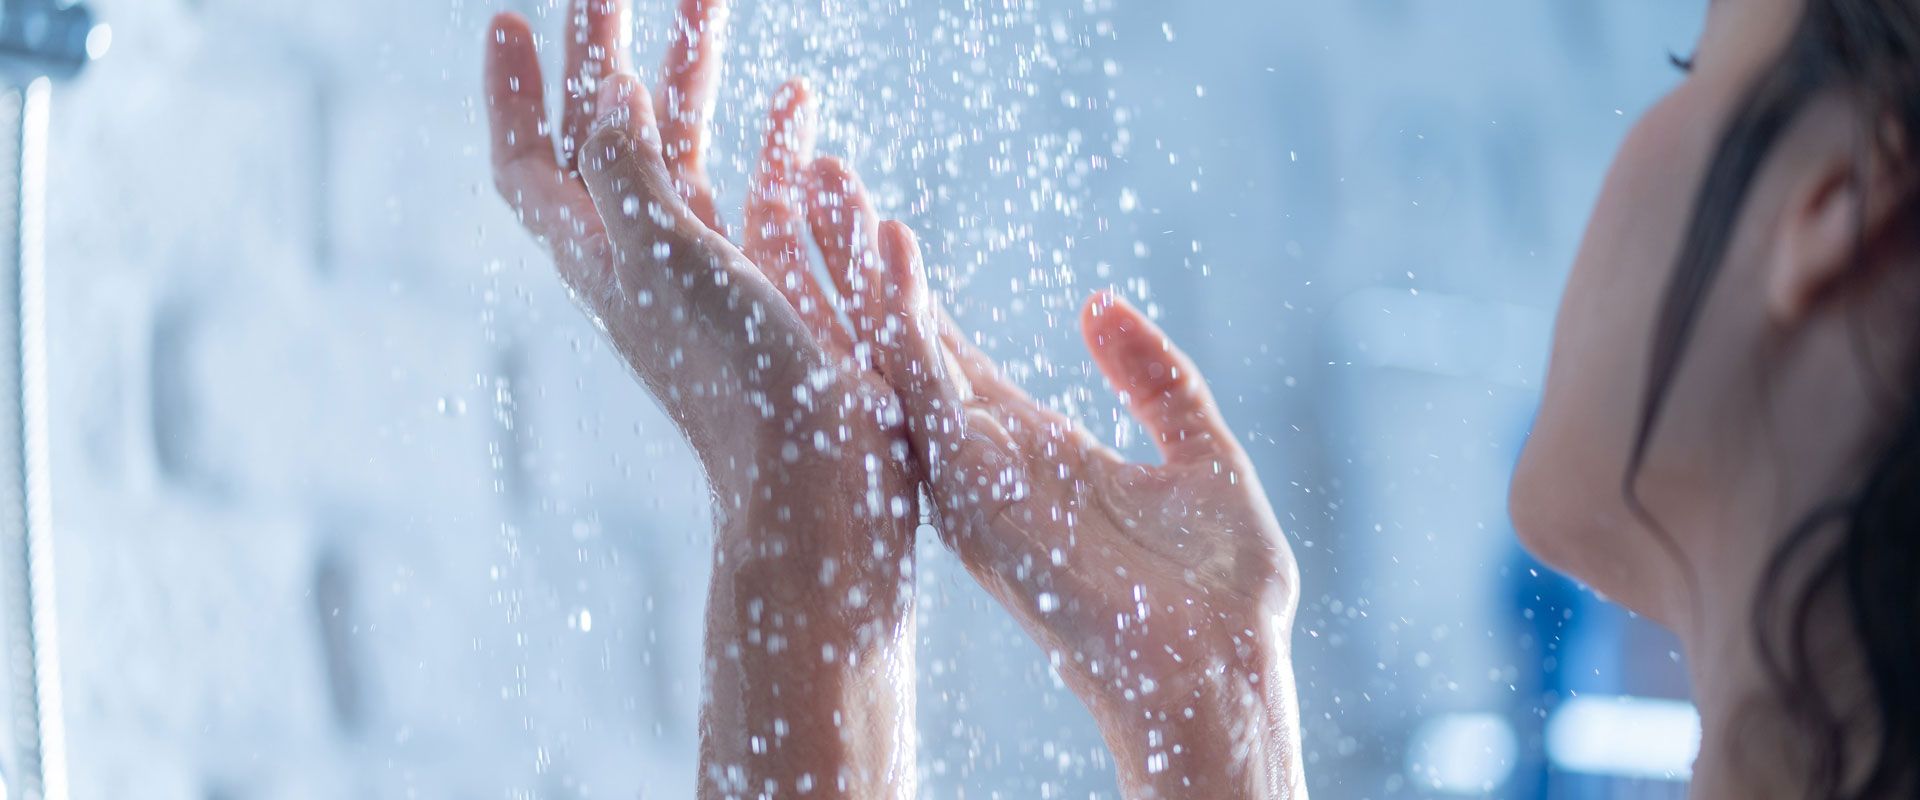 Une femme passant ses mains sous l'eau de la douche